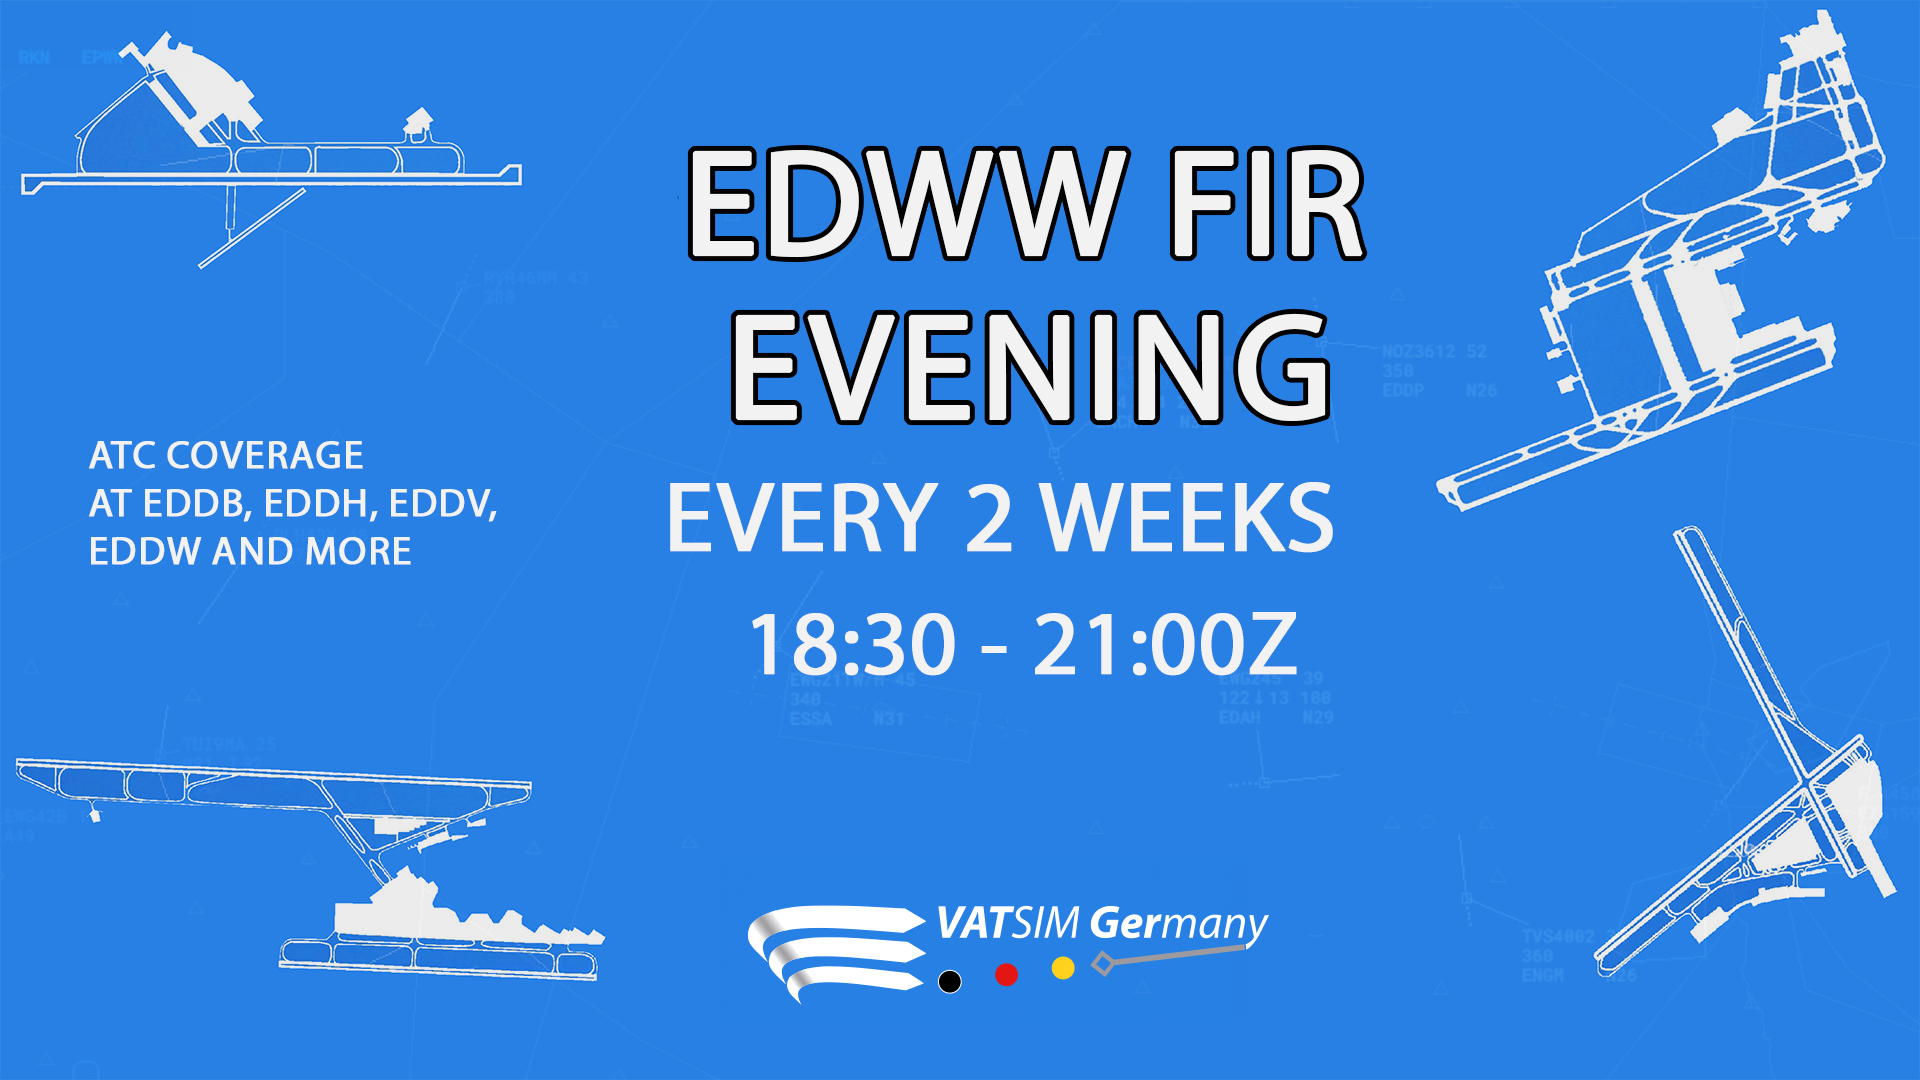 EDWW FIR Evening - Virtual Norwegian Events